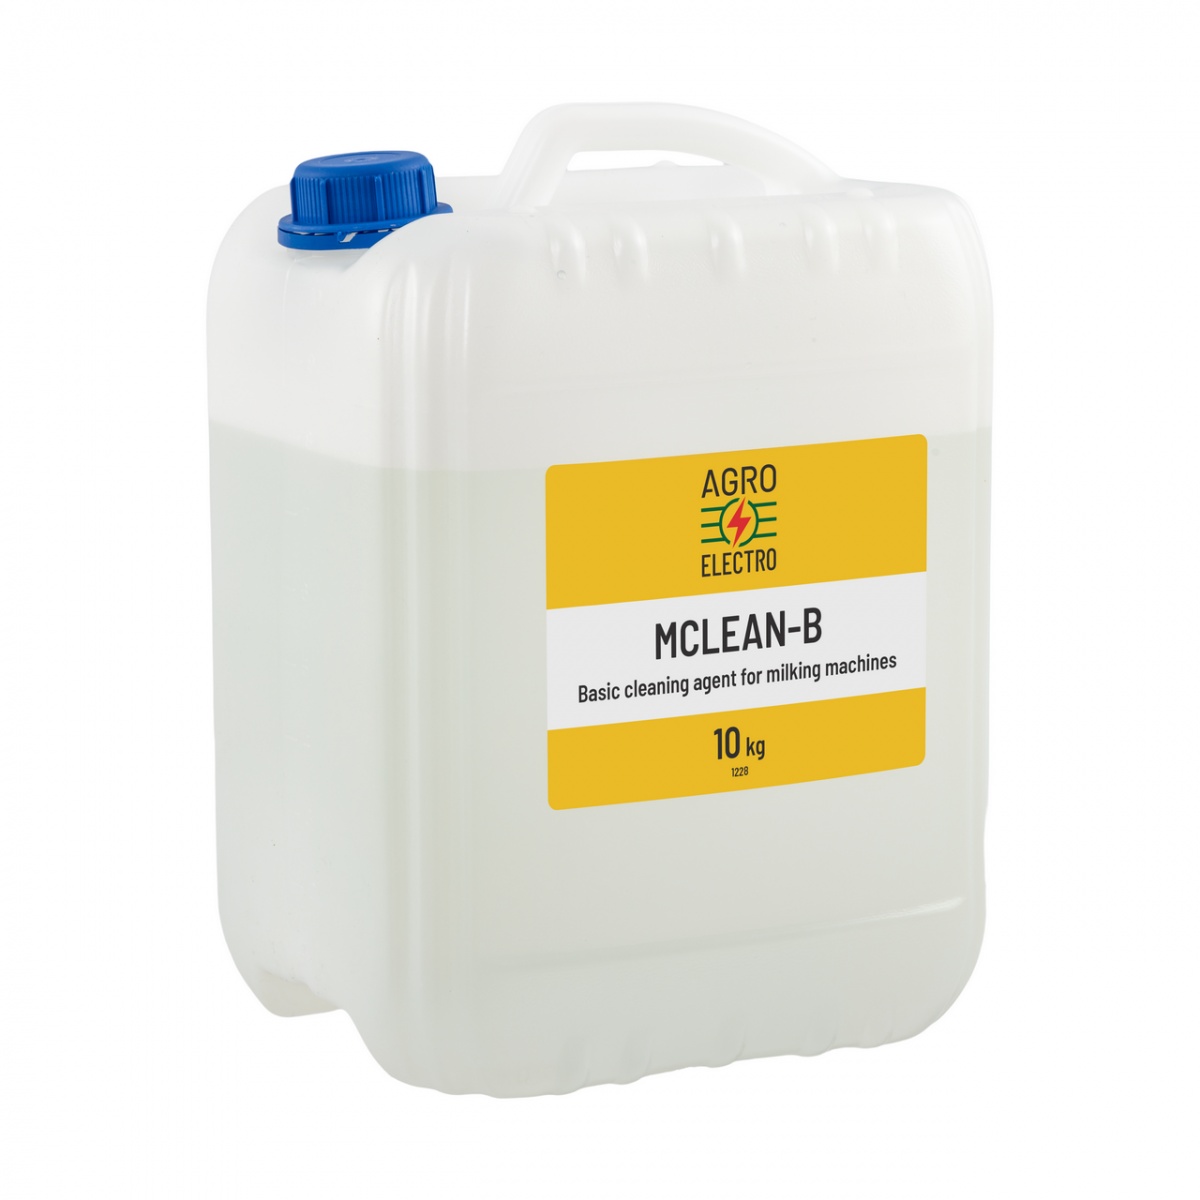 Detergent bazic pentru curățarea aparatelor de muls, MCLEAN-B, 10 kg